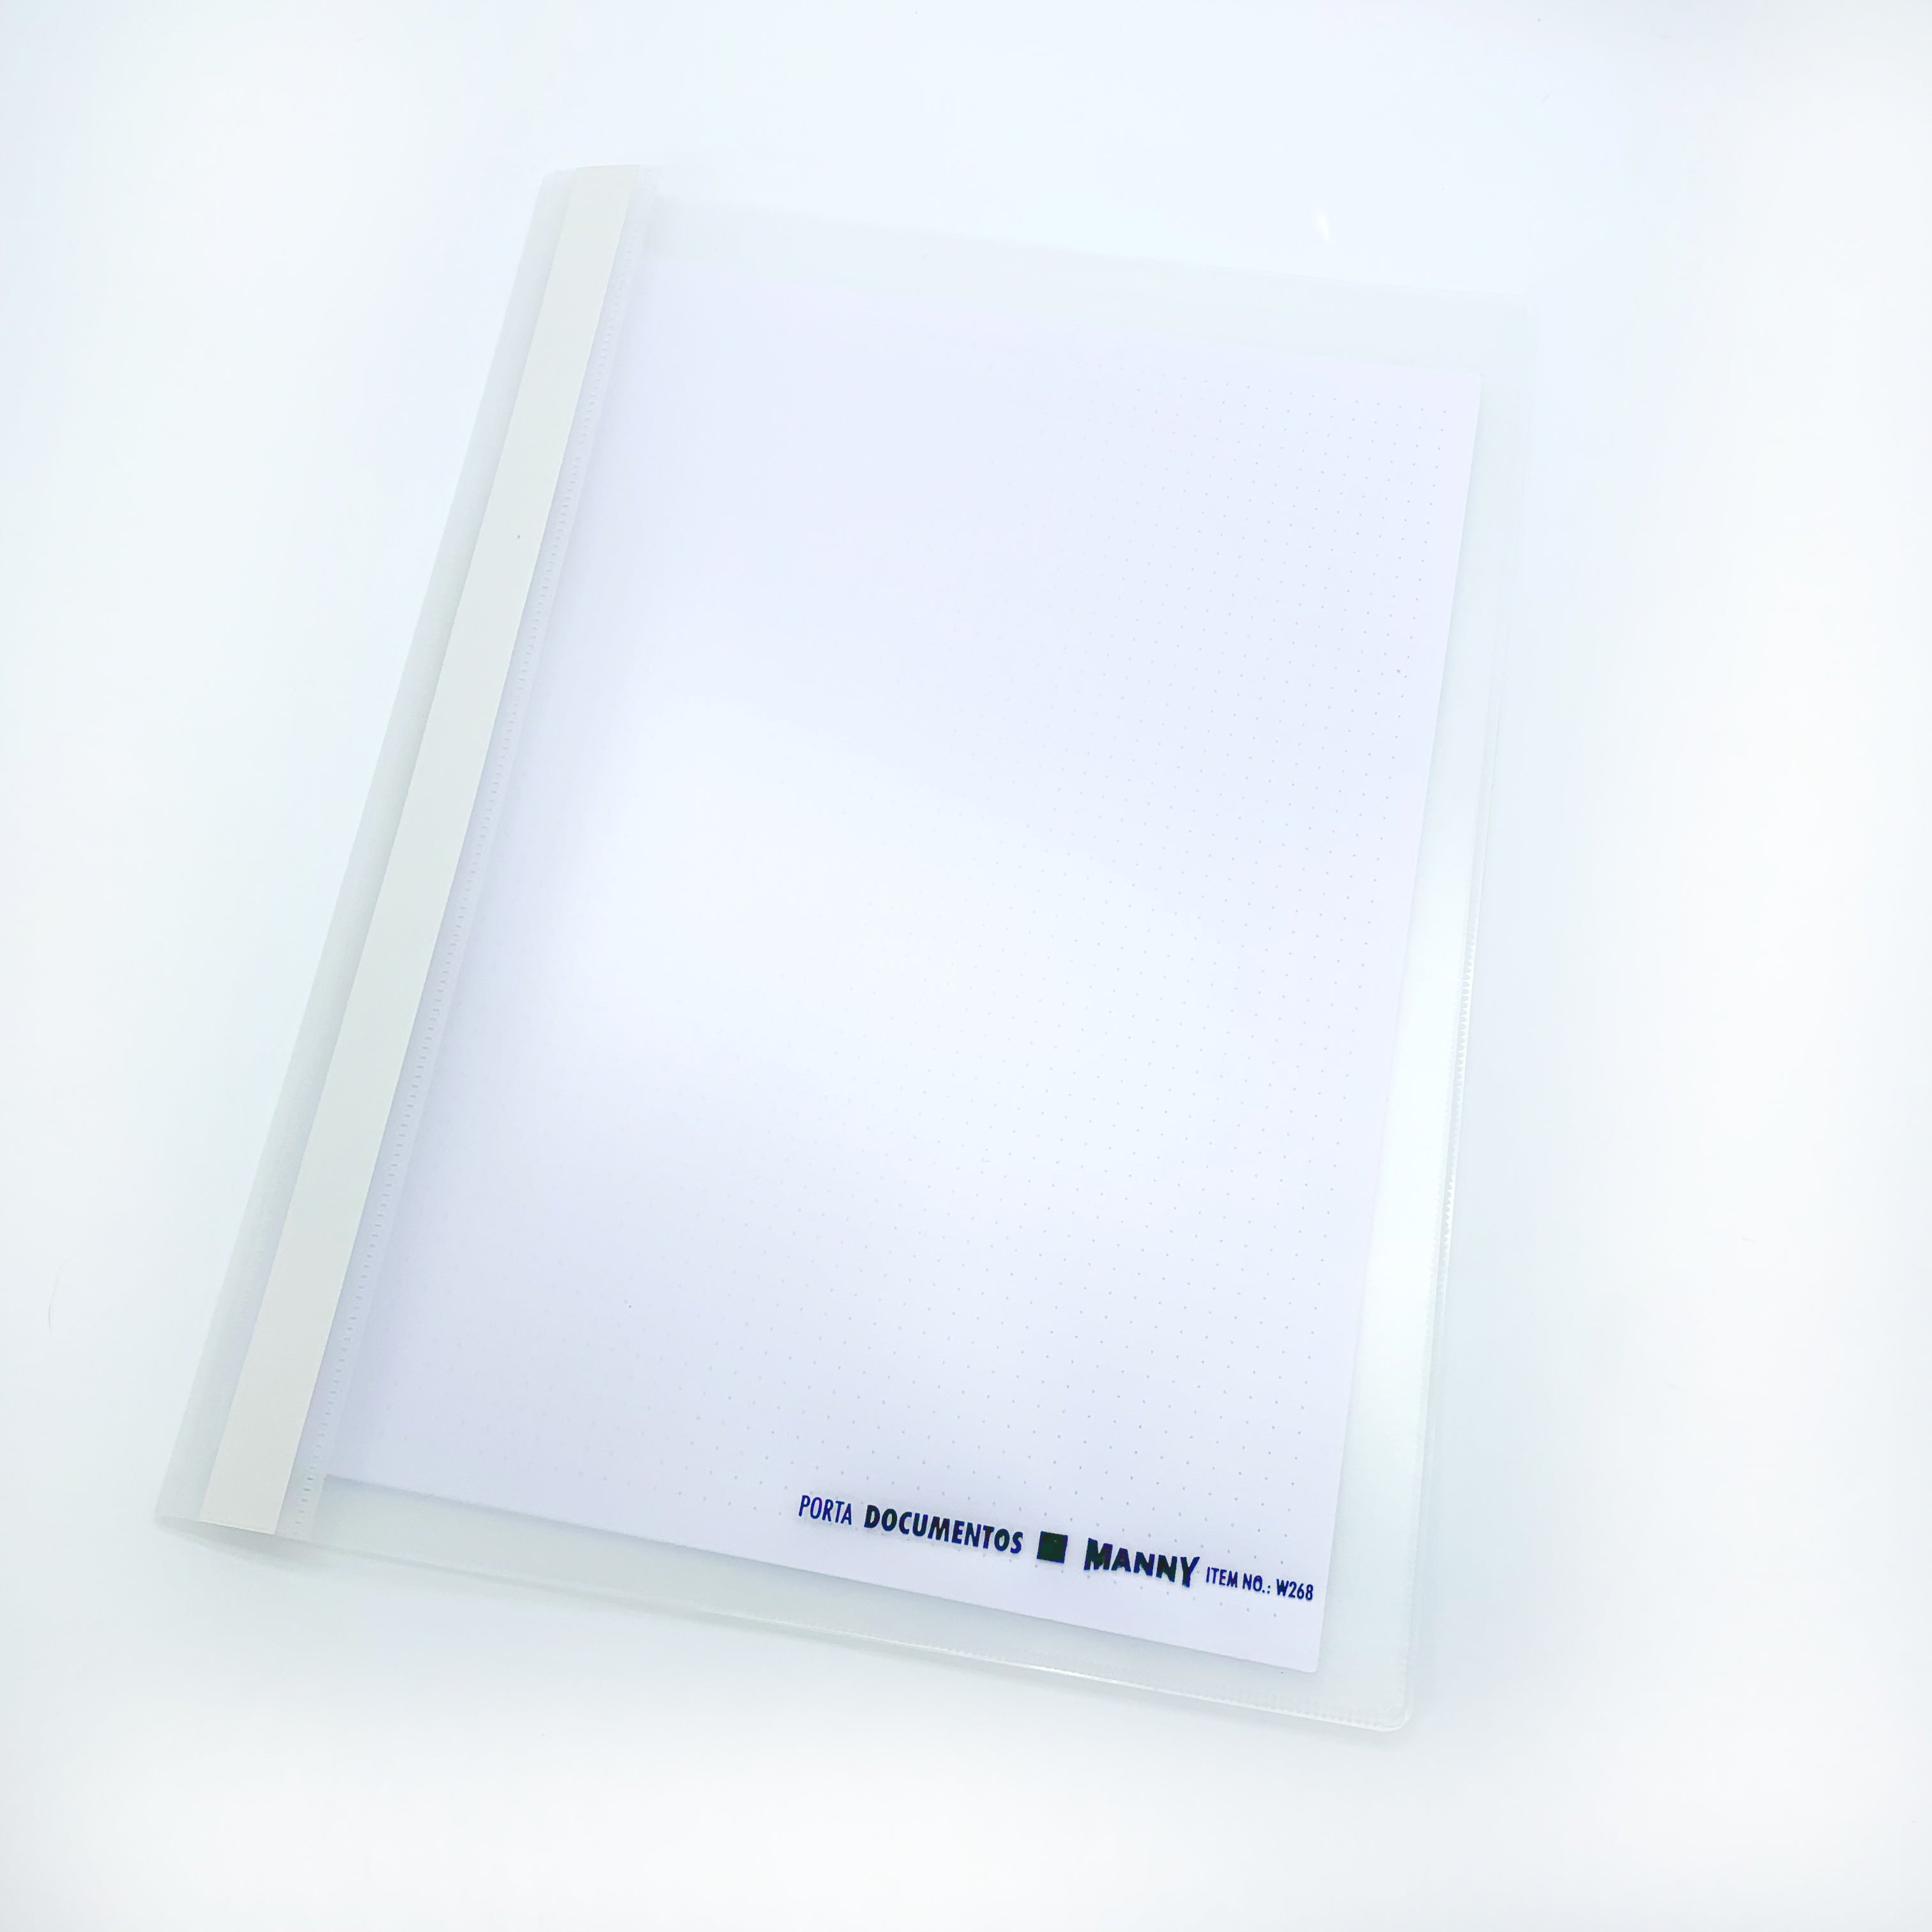 Porta Documentos A116 con Rondana – Manny Distribuciones